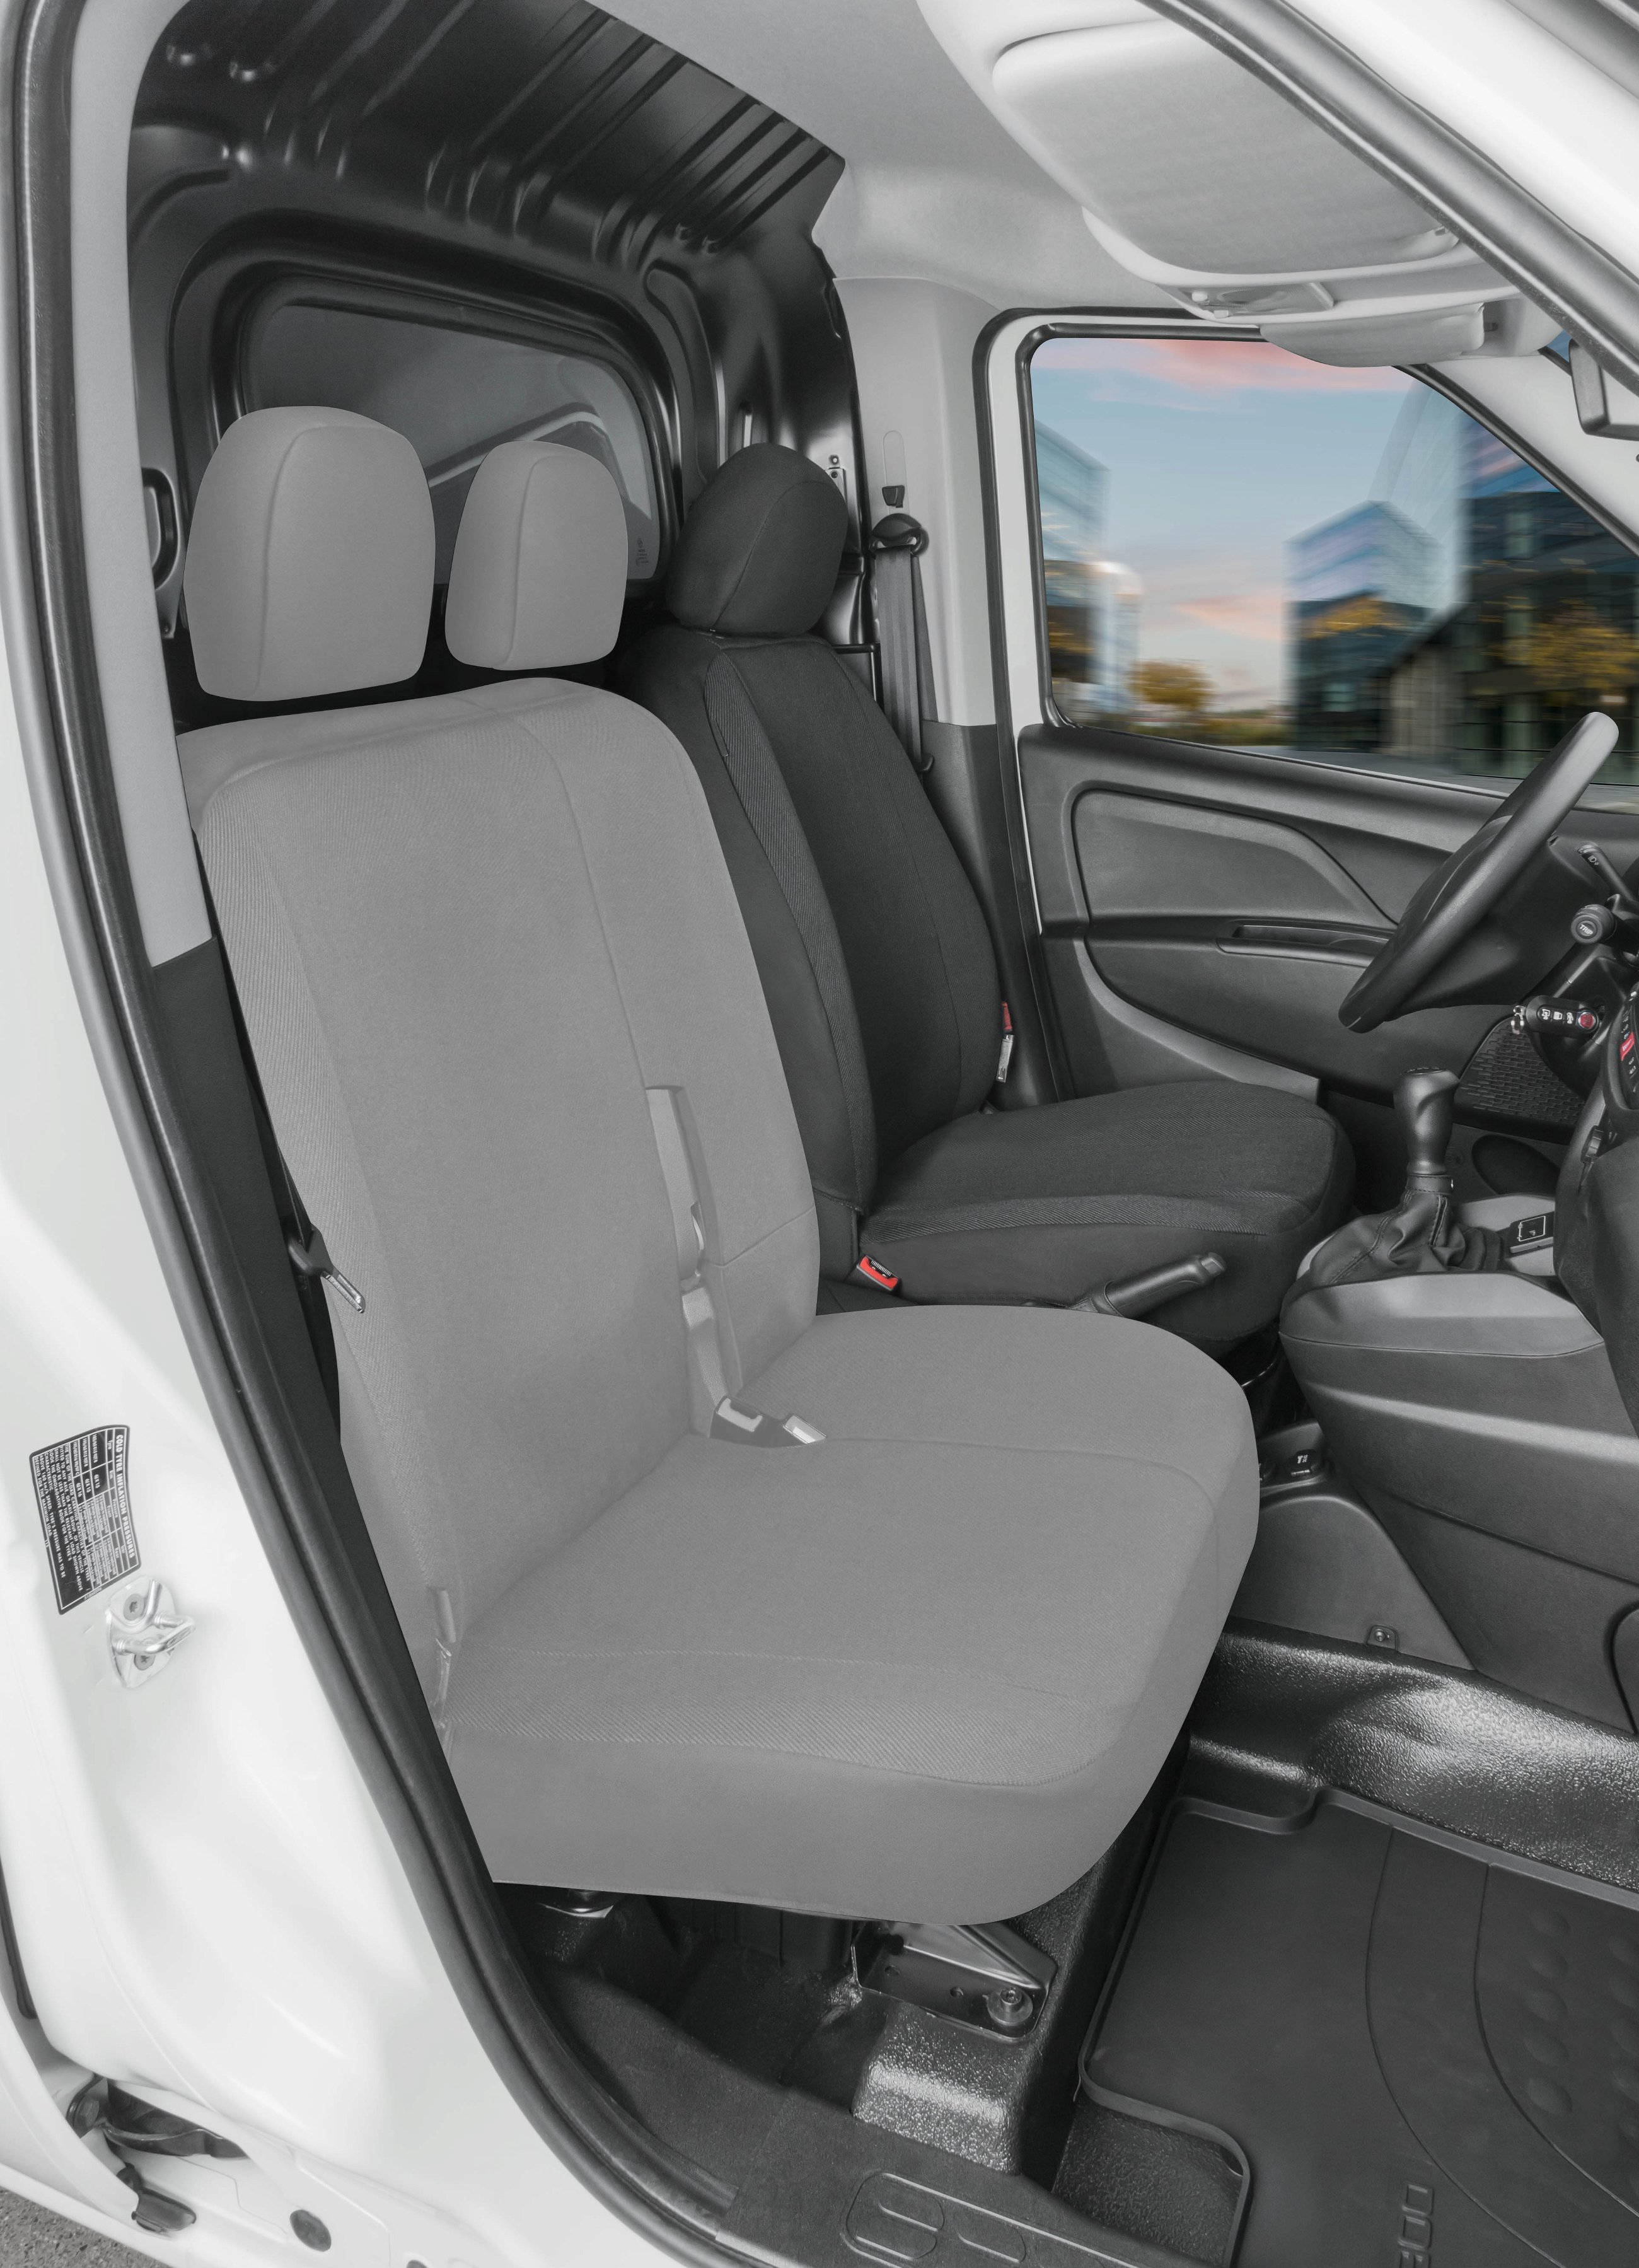 Passform Sitzbezug aus Stoff kompatibel mit Ford Transit Connect, Einzelsitz mit Armlehne innen